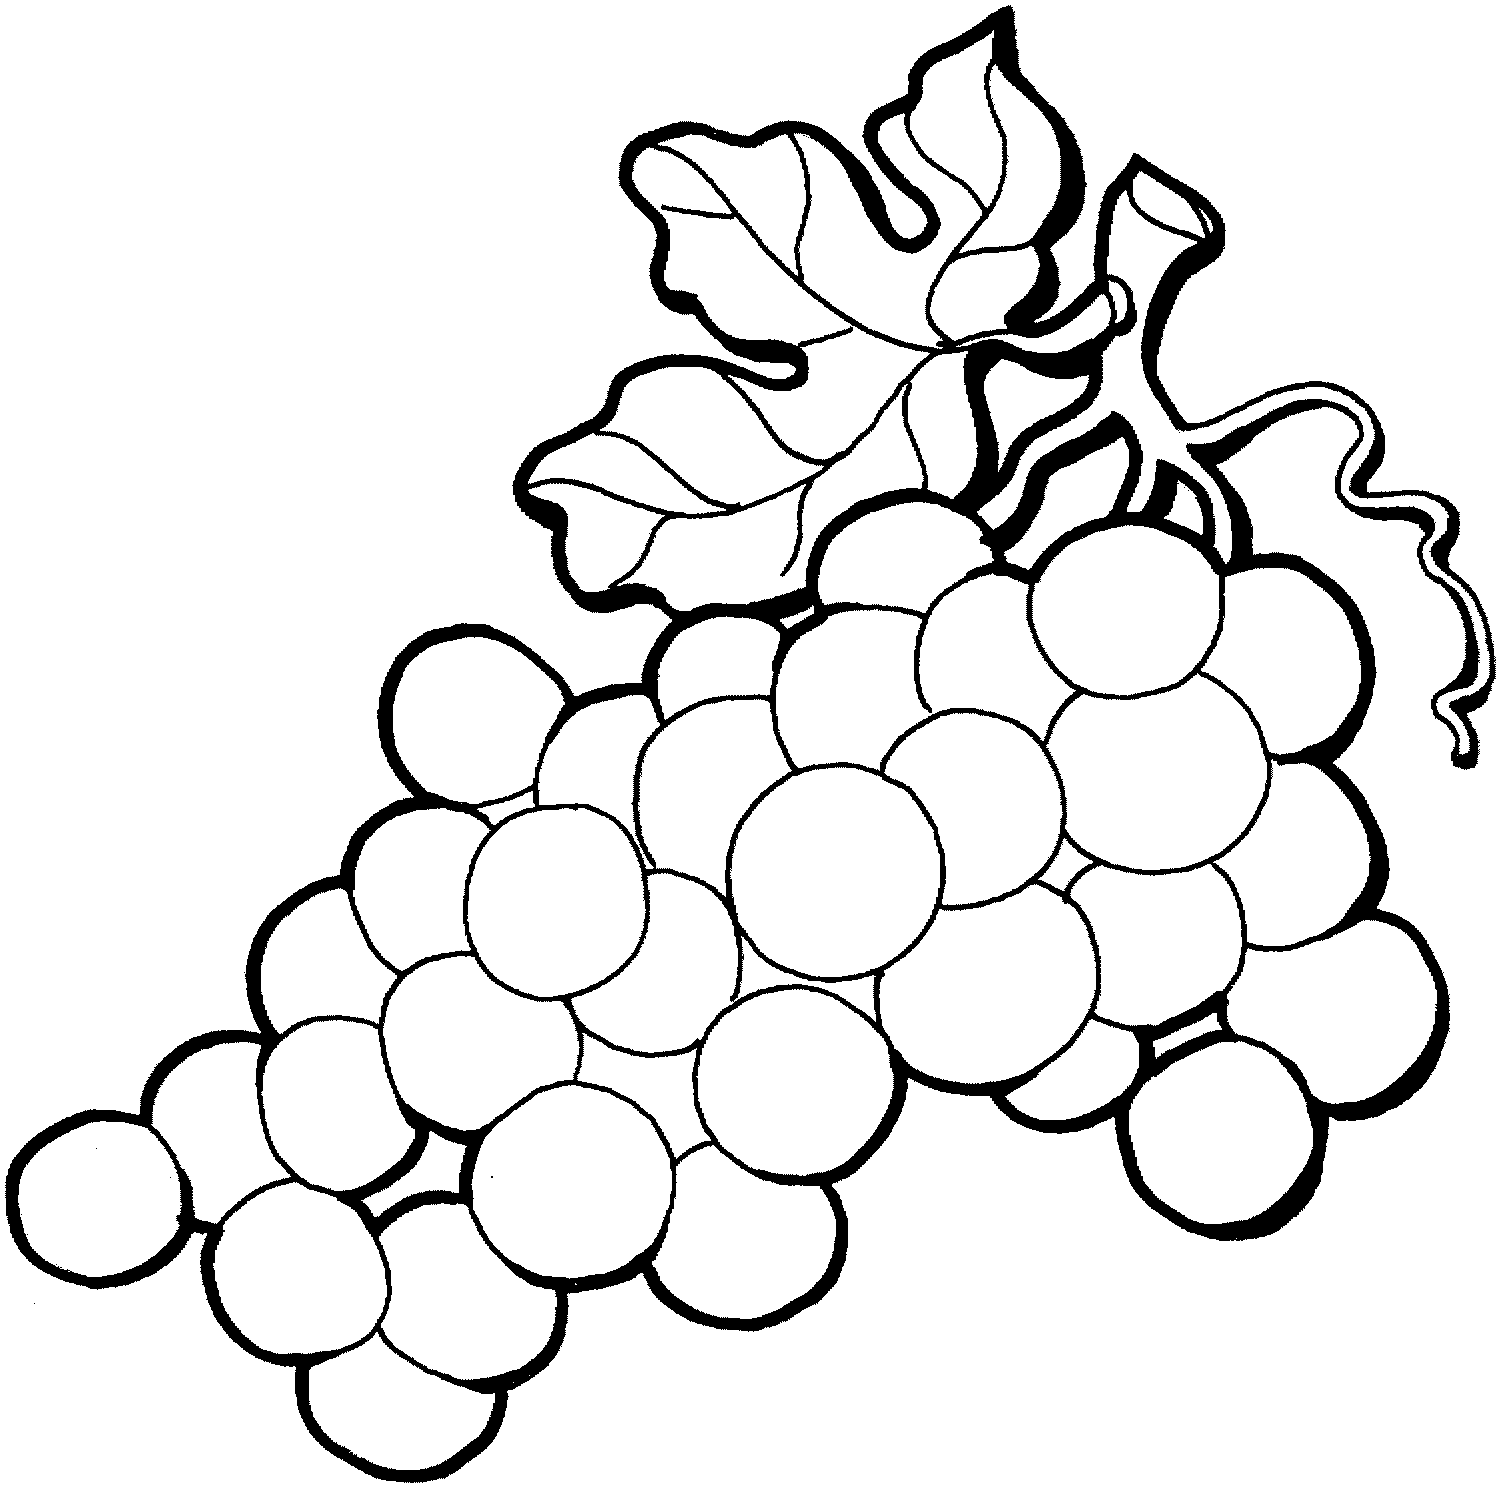 Free grapes drawing.